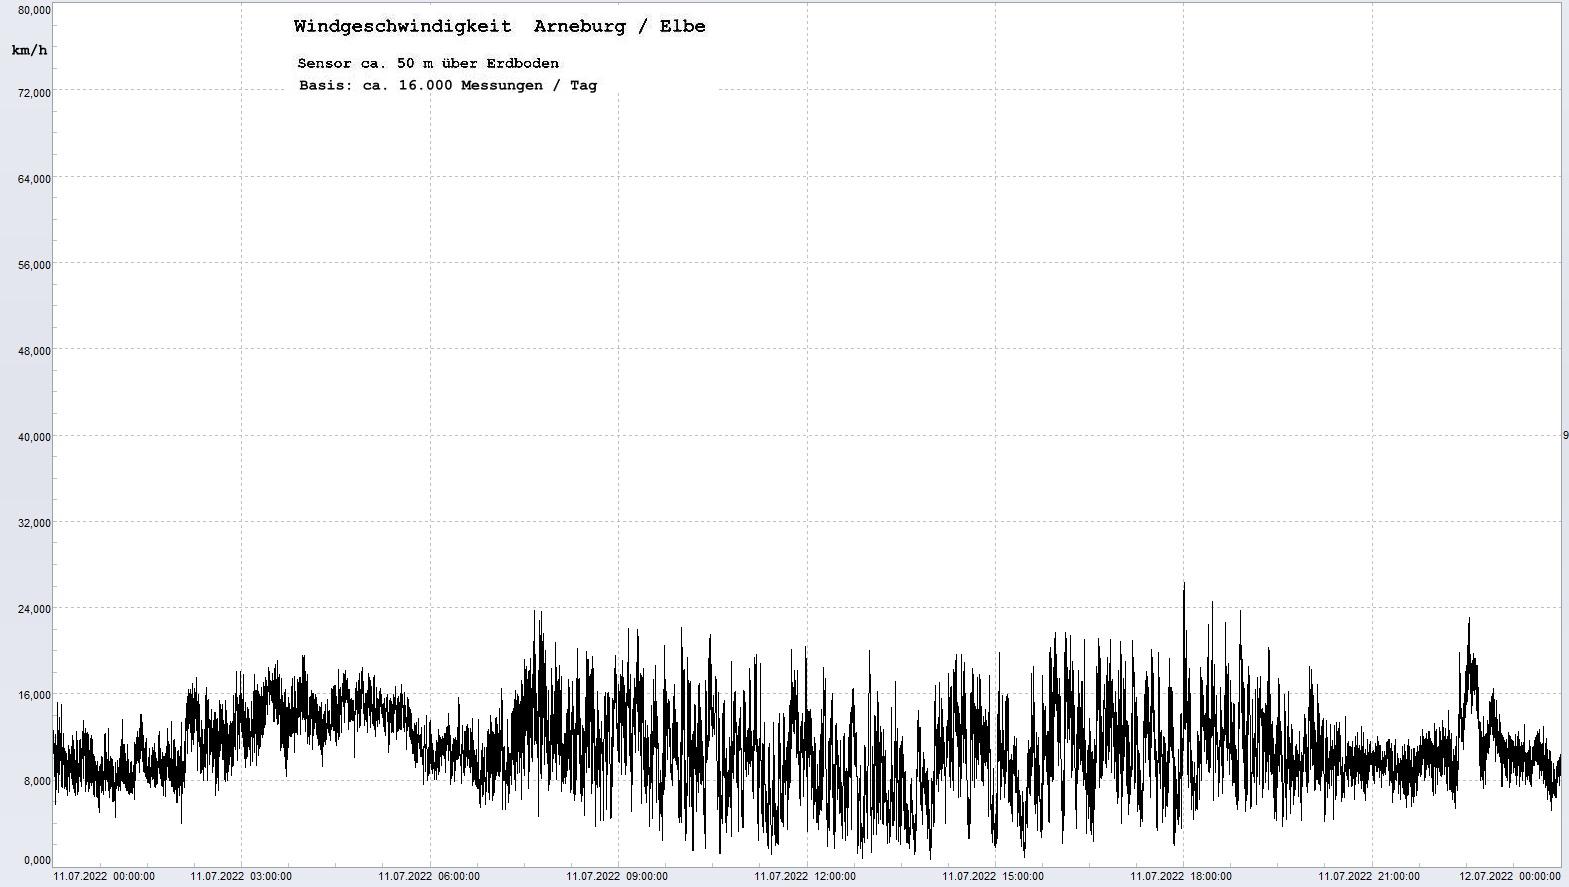 Arneburg Tages-Diagramm Winddaten, 11.07.2022
  Diagramm, Sensor auf Gebude, ca. 50 m ber Erdboden, Basis: 5s-Aufzeichnung